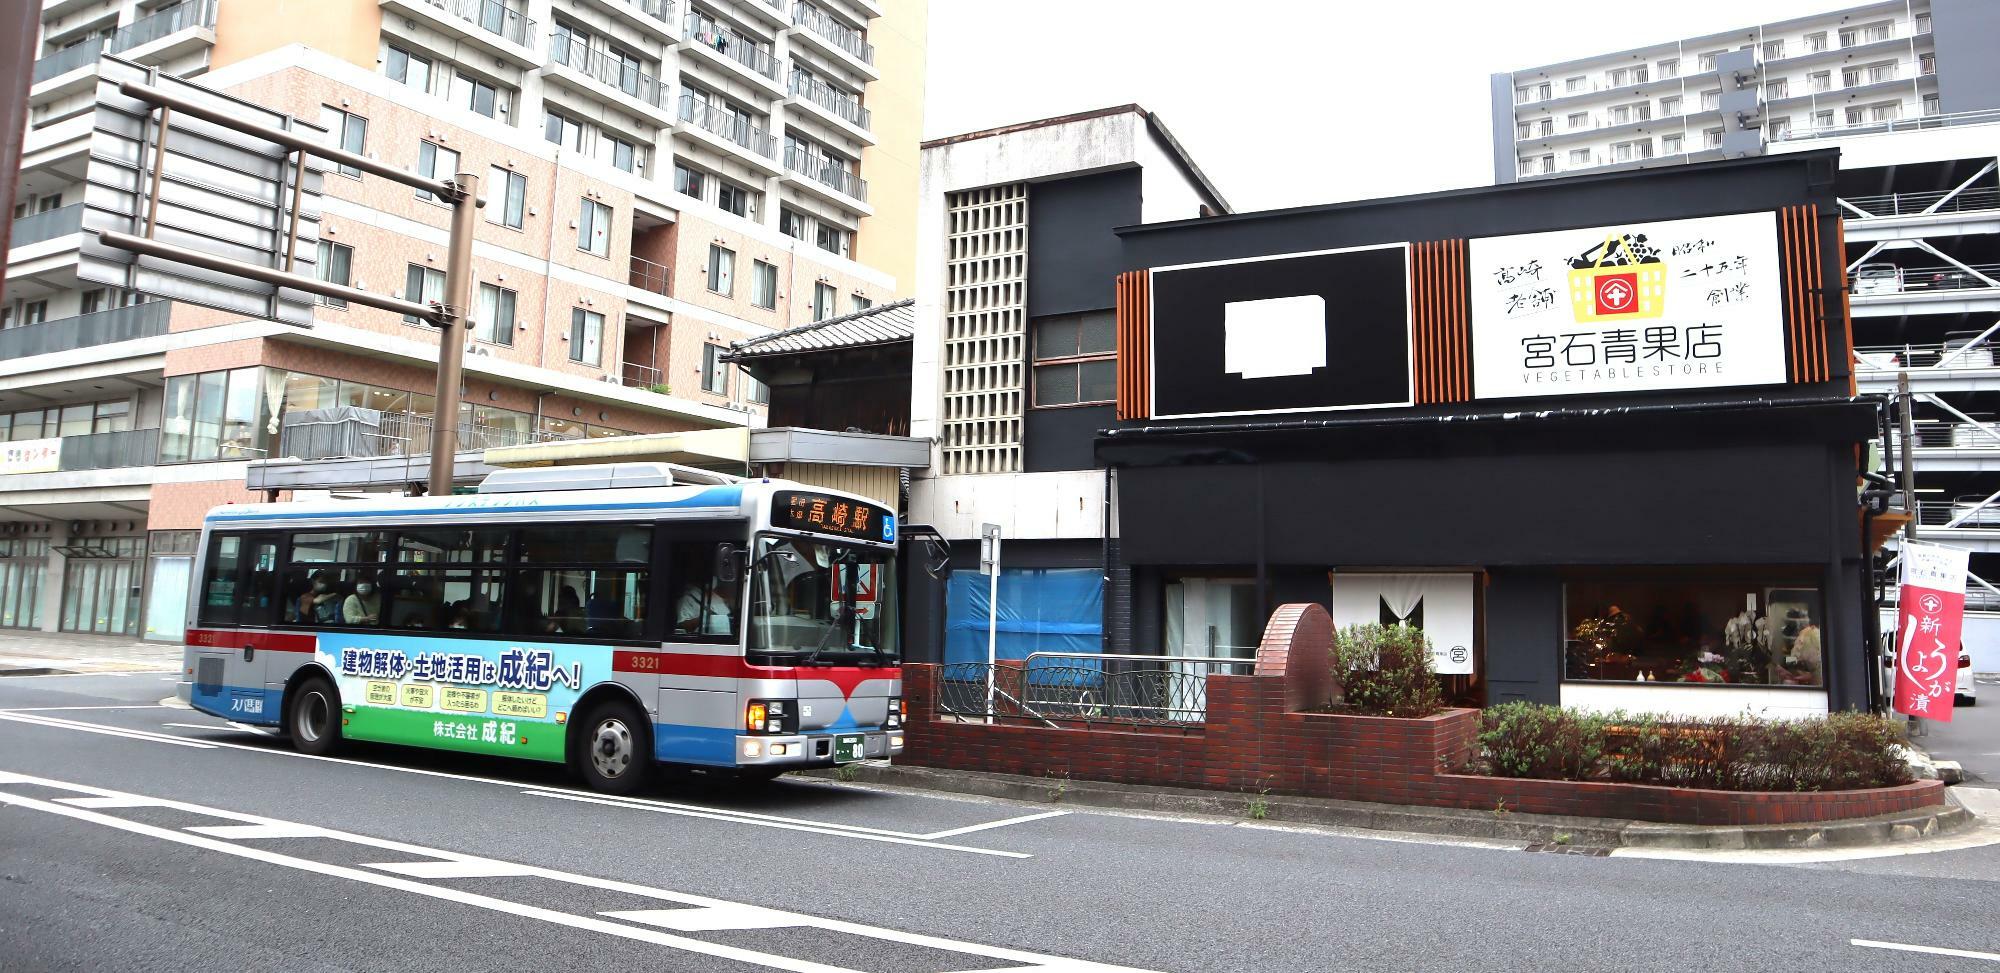 連雀町バス停に停車中のバス と 新規オープン「宮石青果店」